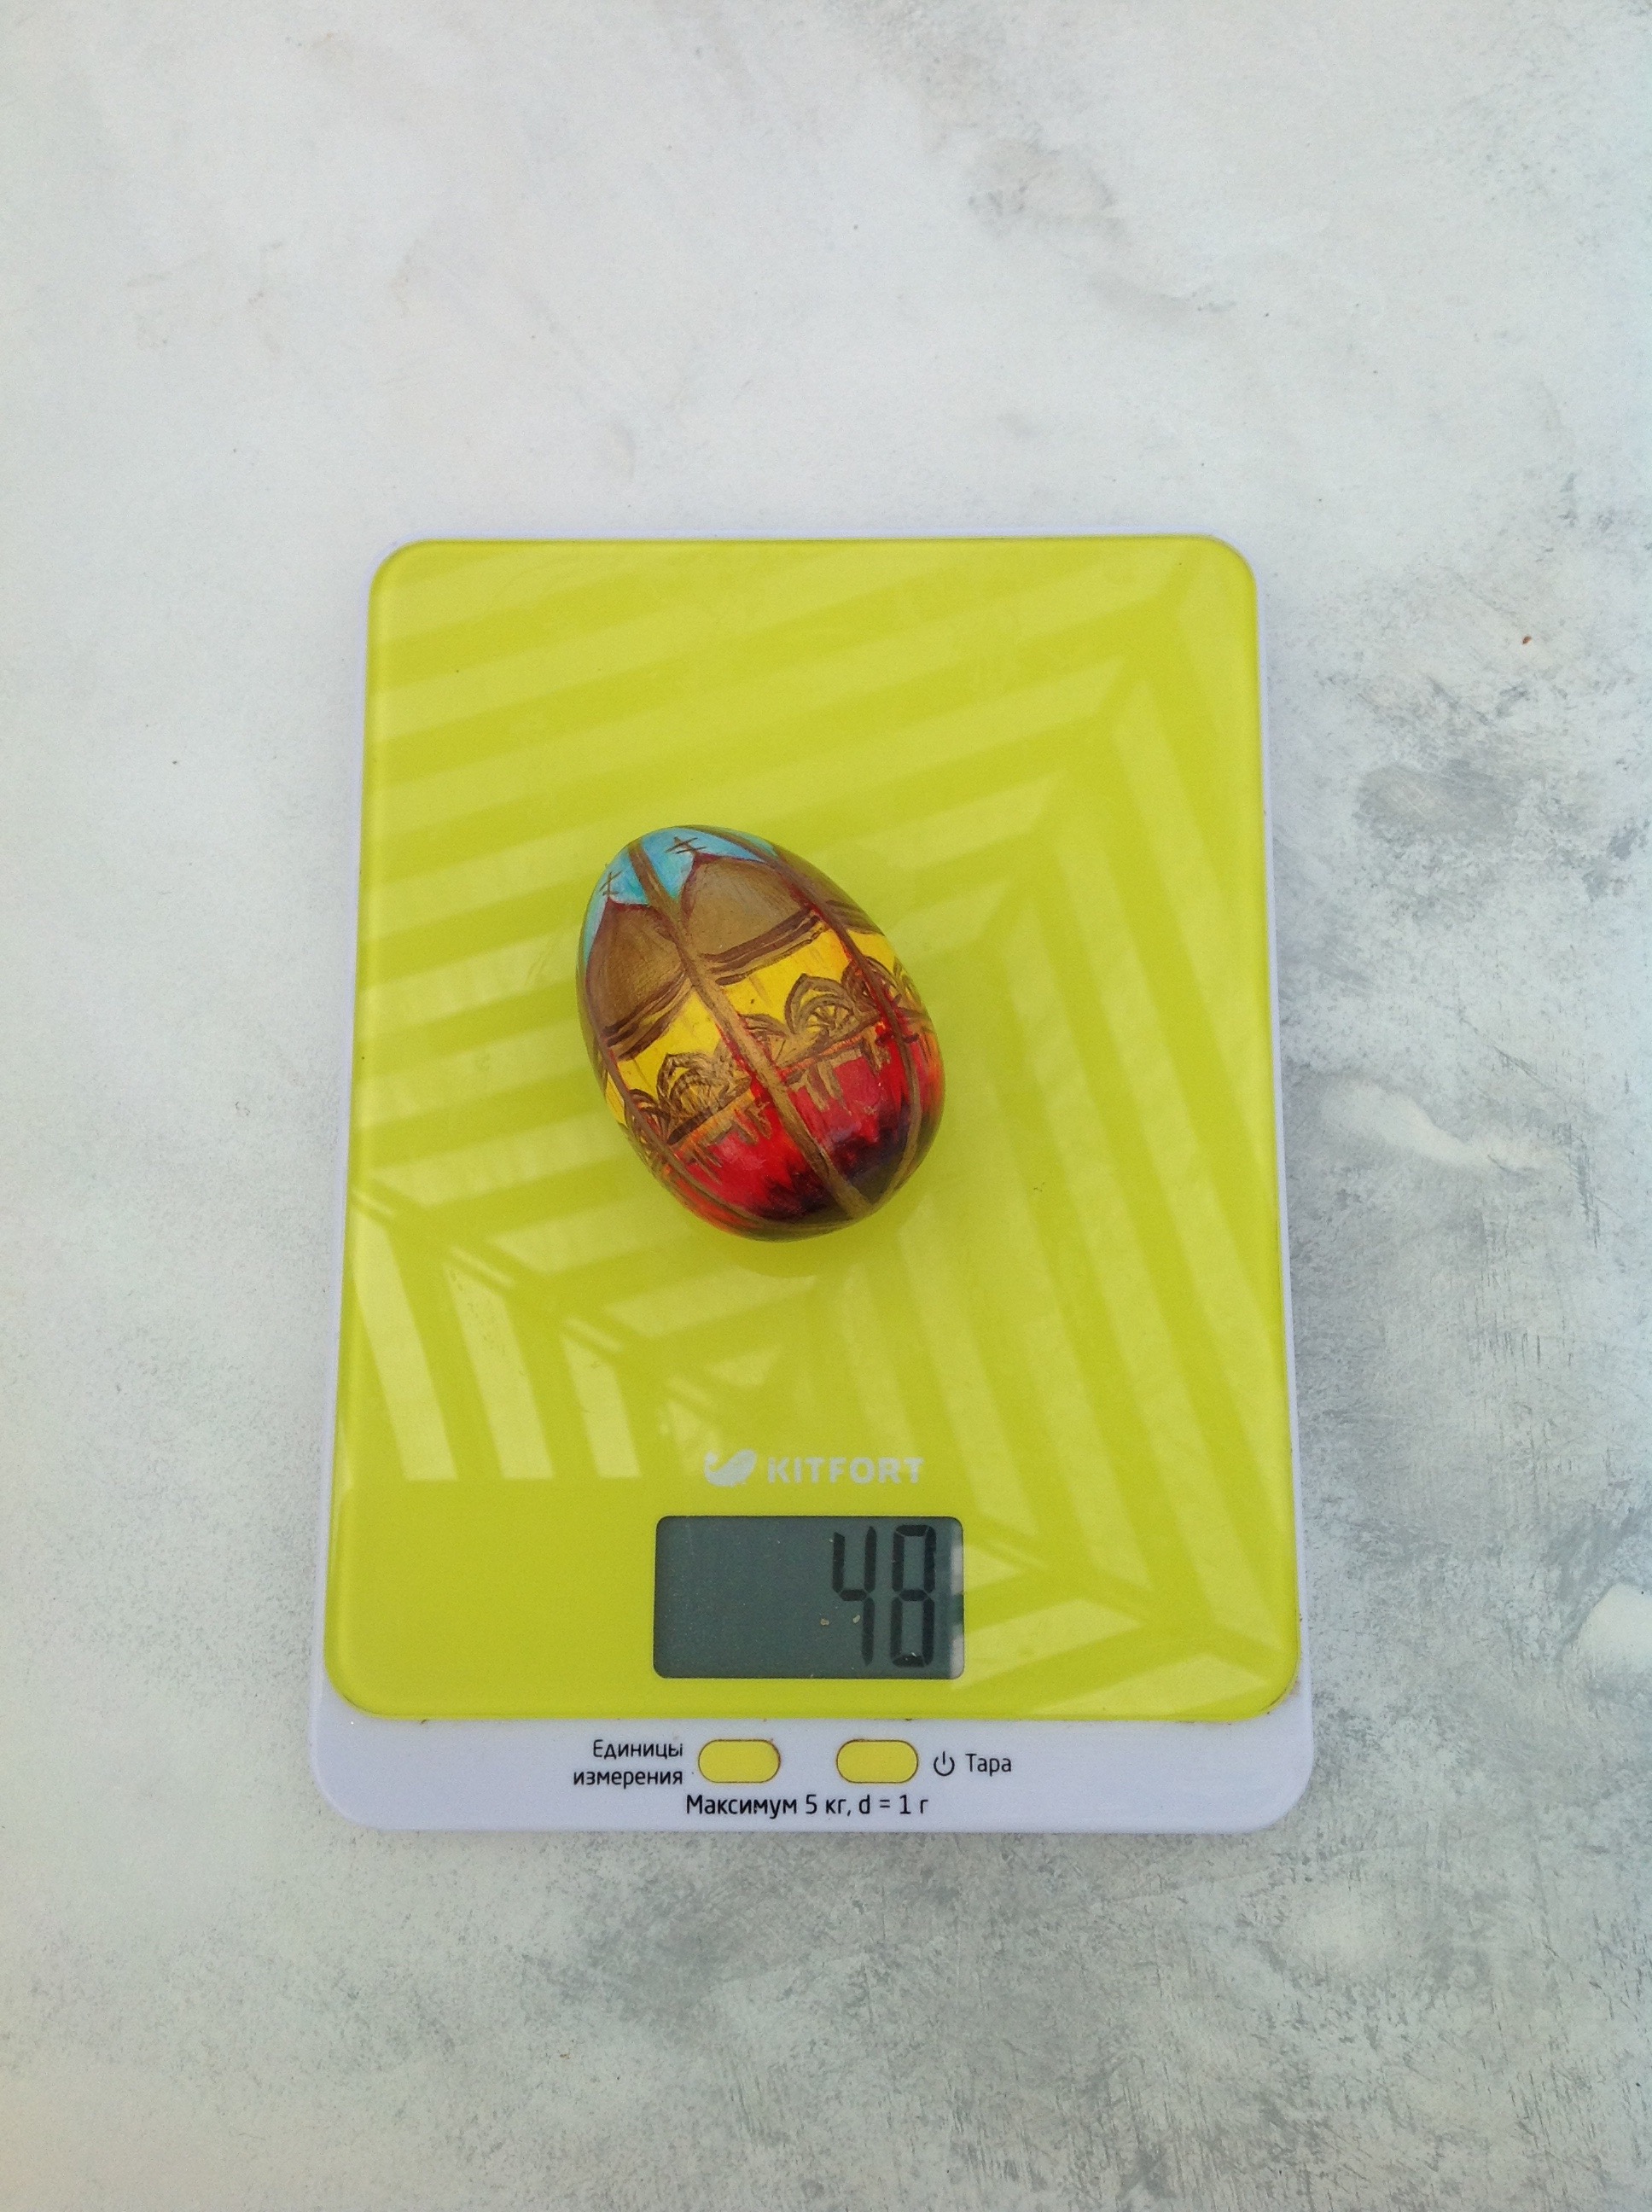 вес пасхального яйца деревянного расписного